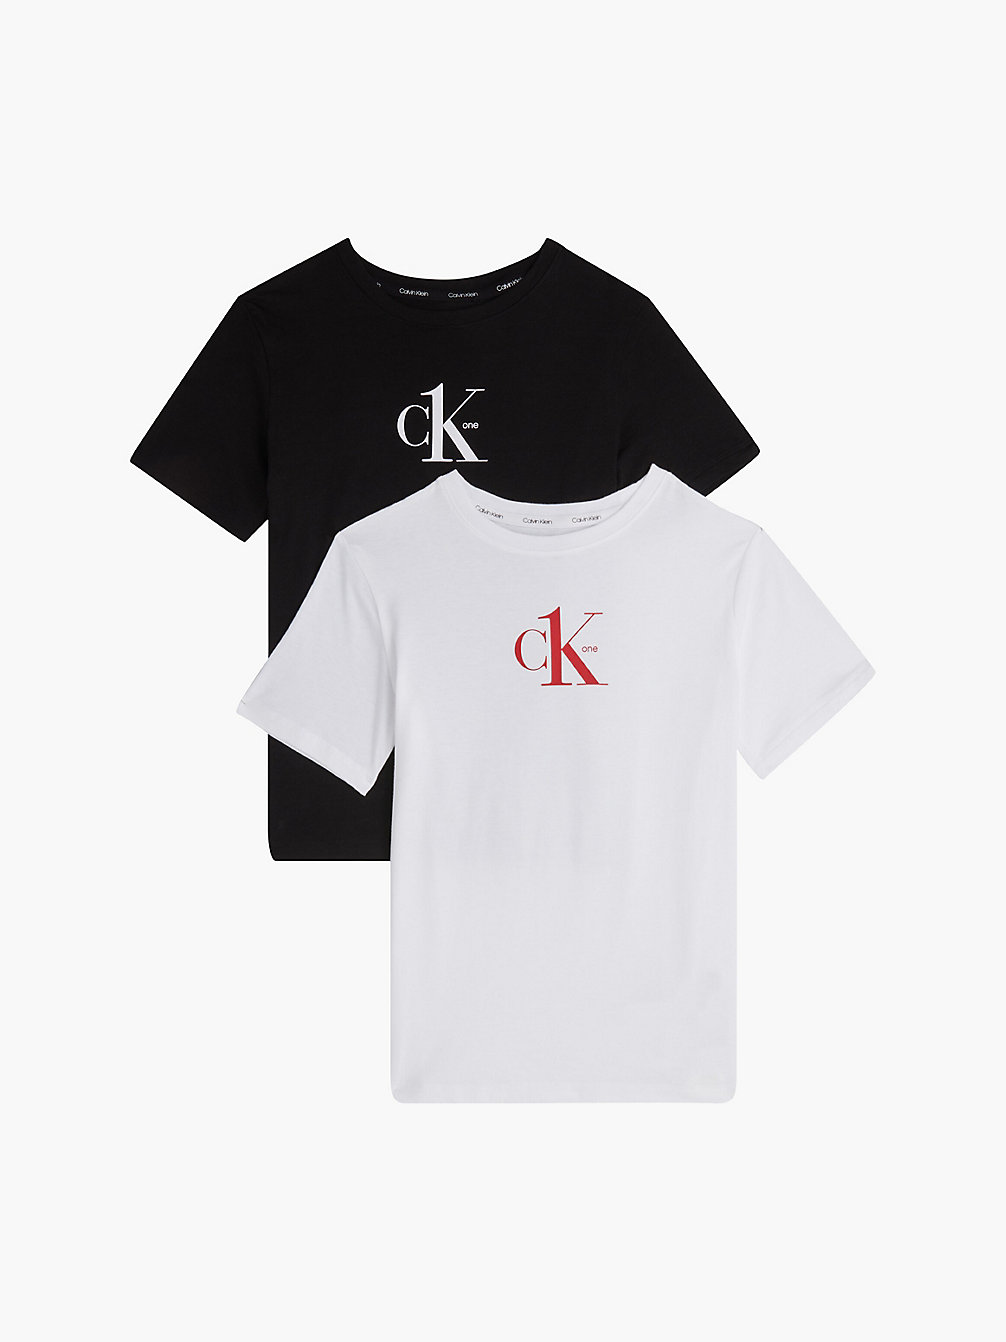 T-Shirt Unisex In Confezione Da 2 - CK One > PVHBLACK/PVHWHITE > undefined kids unisex > Calvin Klein